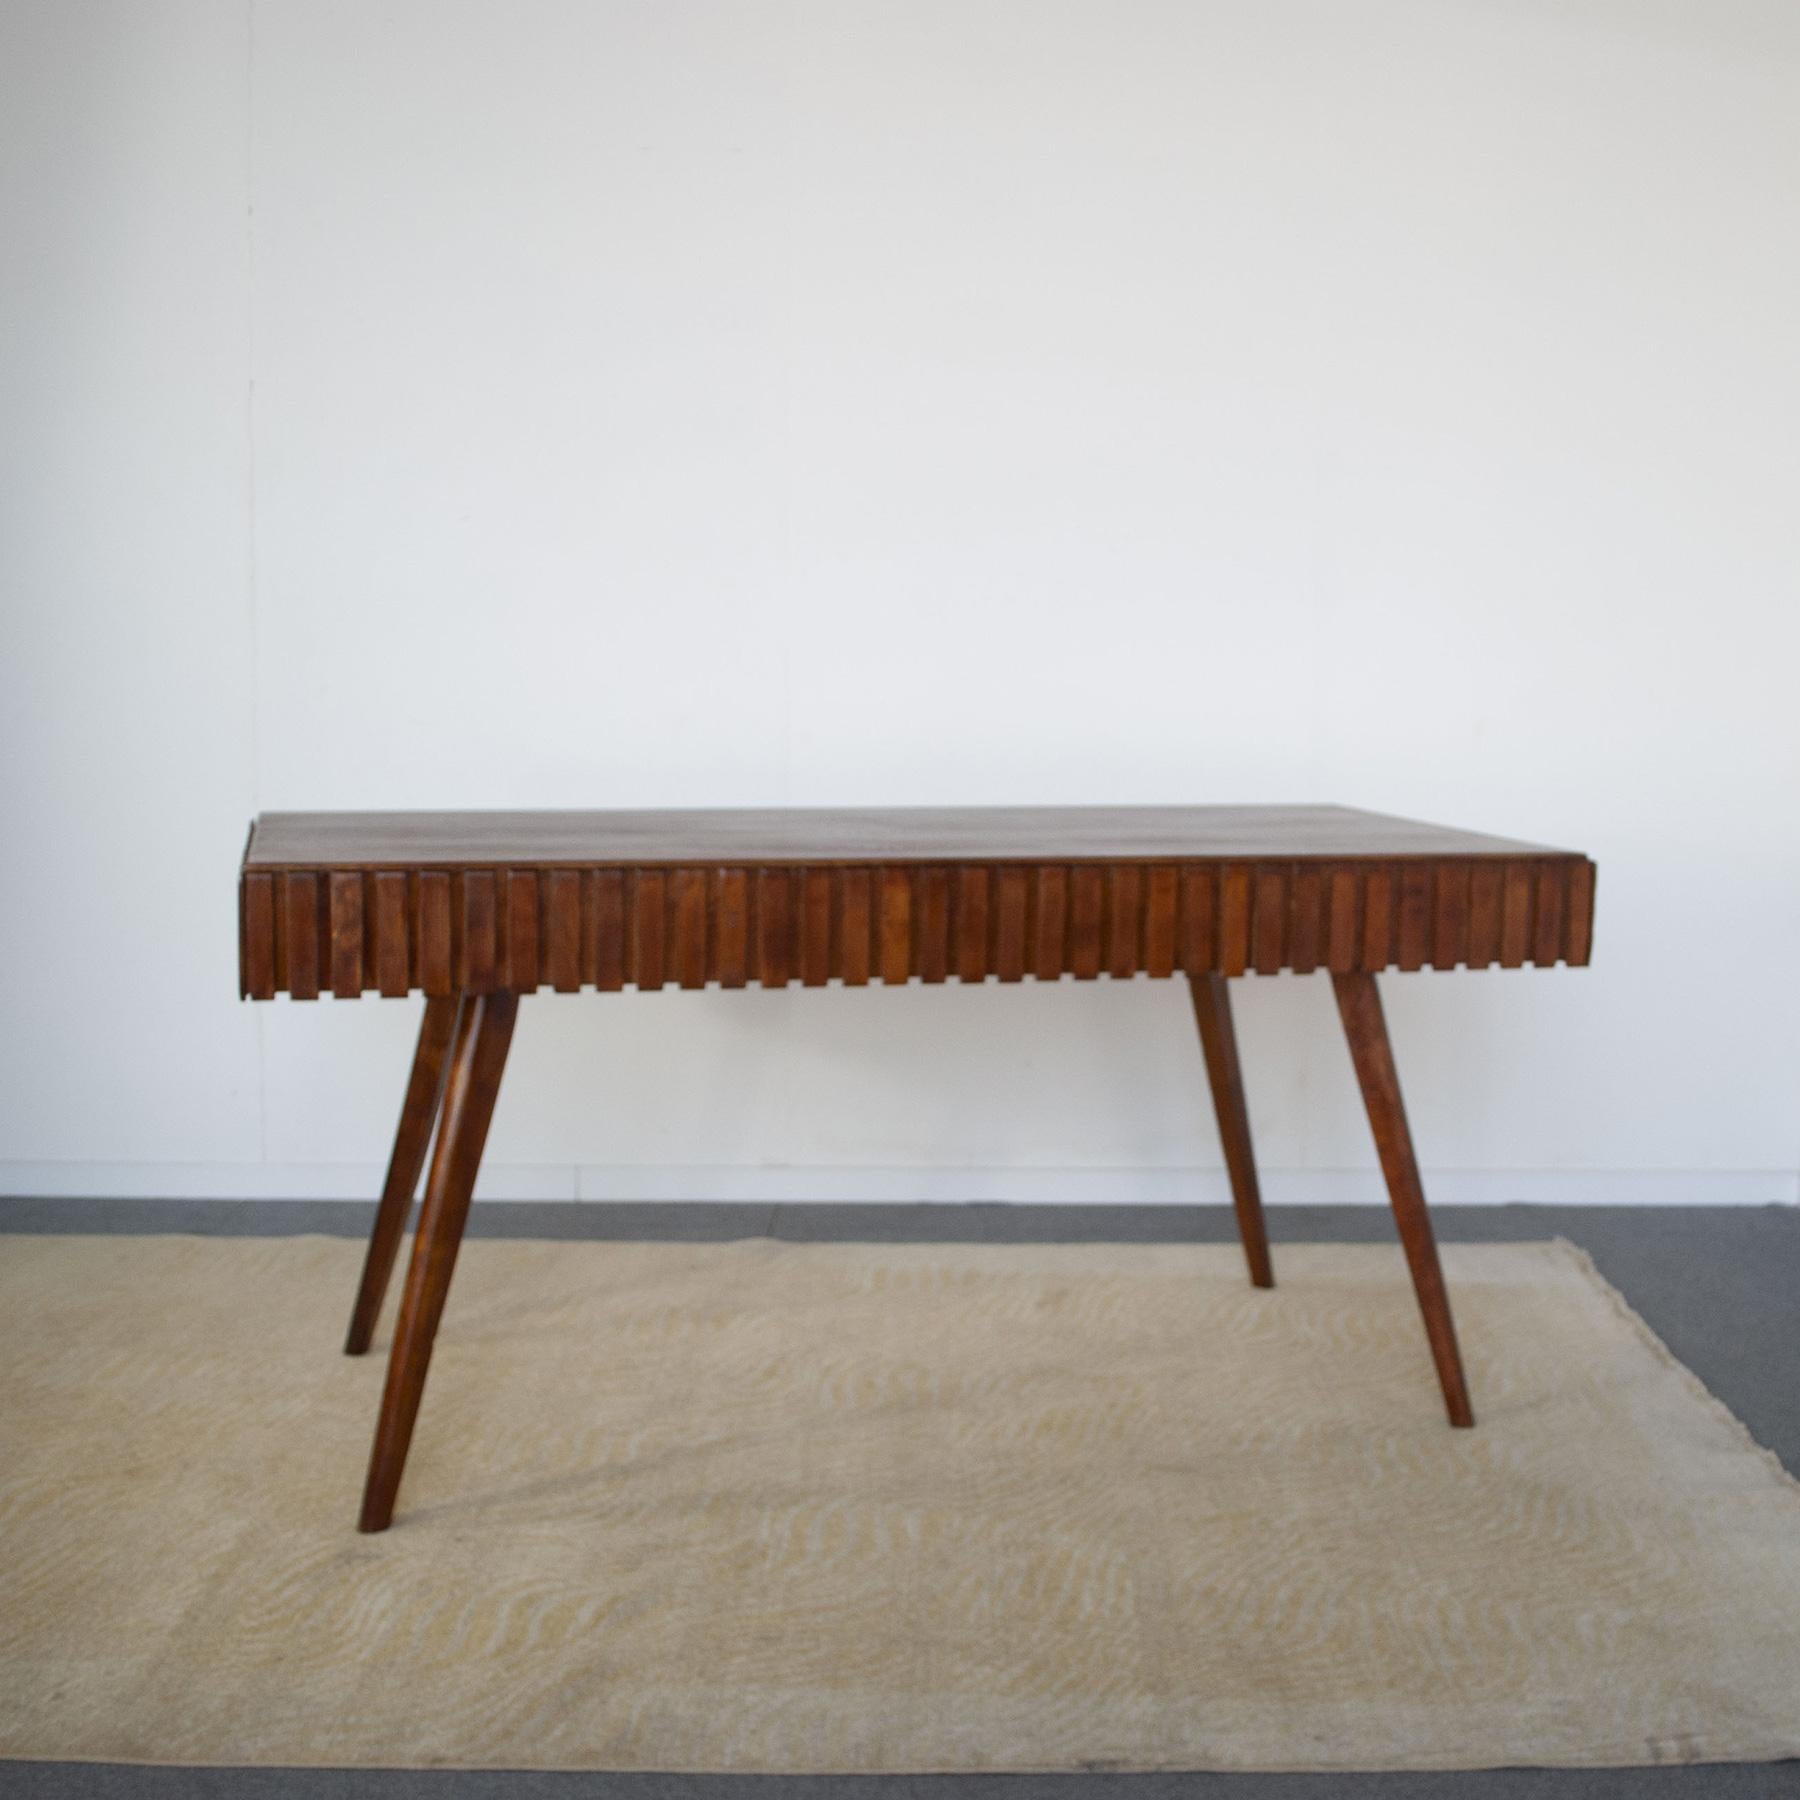 Einfacher, aber eleganter Tisch mit Intarsien und Holzarbeiten, der dem Frühwerk von Paolo Buffa Ende der 1950er Jahre zugeschrieben wird. Der Tisch verfügt über zwei versteckte Schubladen, die nicht nur als Stauraum, sondern auch als Ausziehplatte